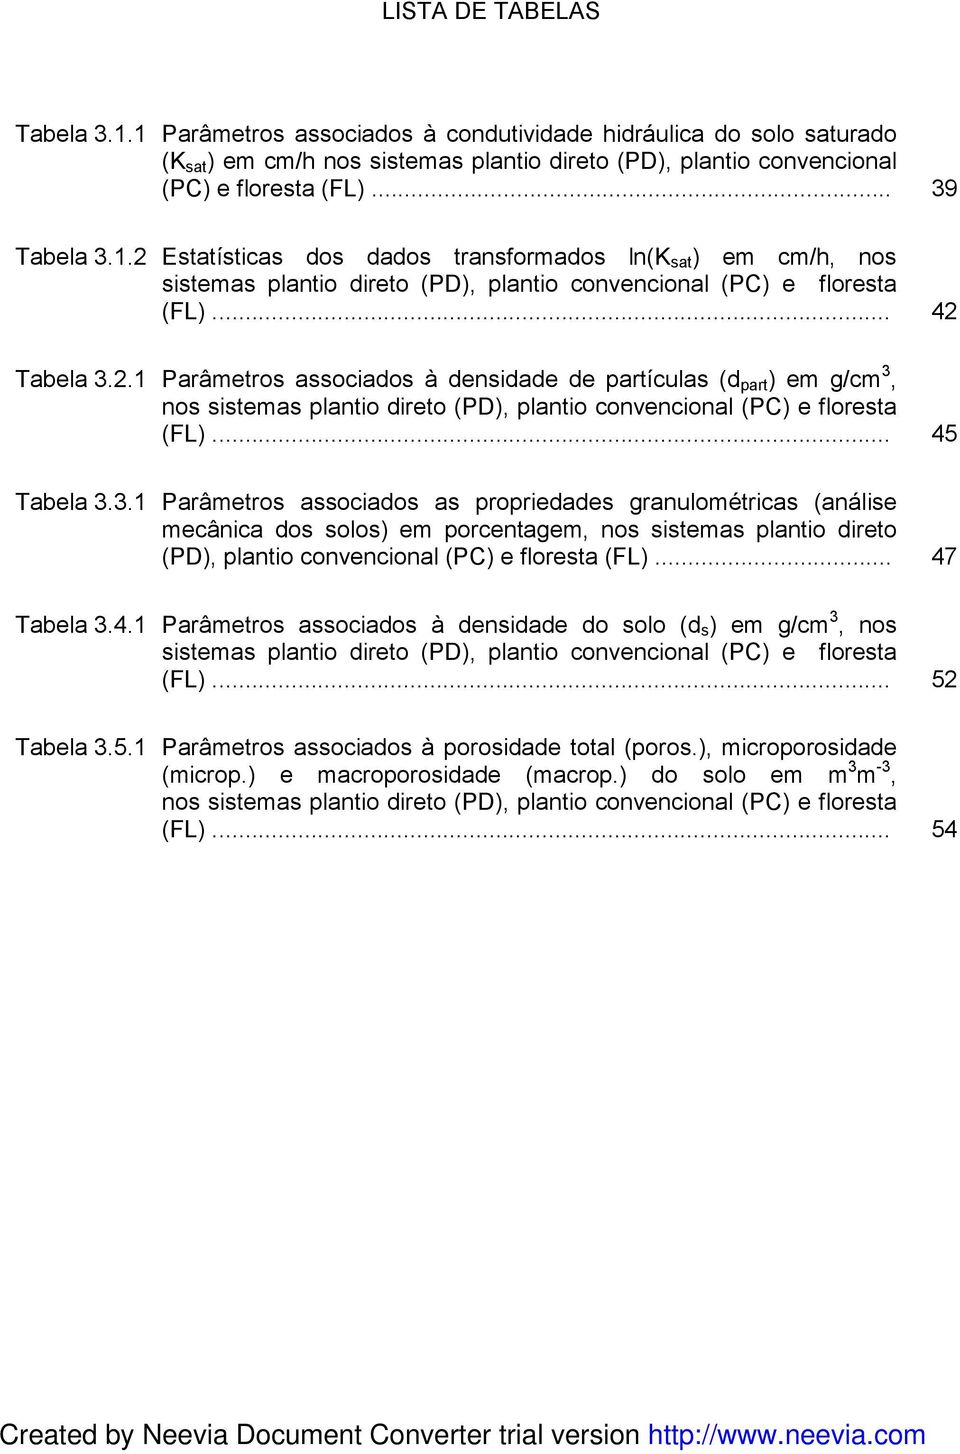 .. 5 Tabela 3.3.1 Parâmetros associados as propriedades granulométricas (análise mecânica dos solos) em porcentagem, nos sistemas plantio direto (PD), plantio convencional (PC) e floresta (FL).